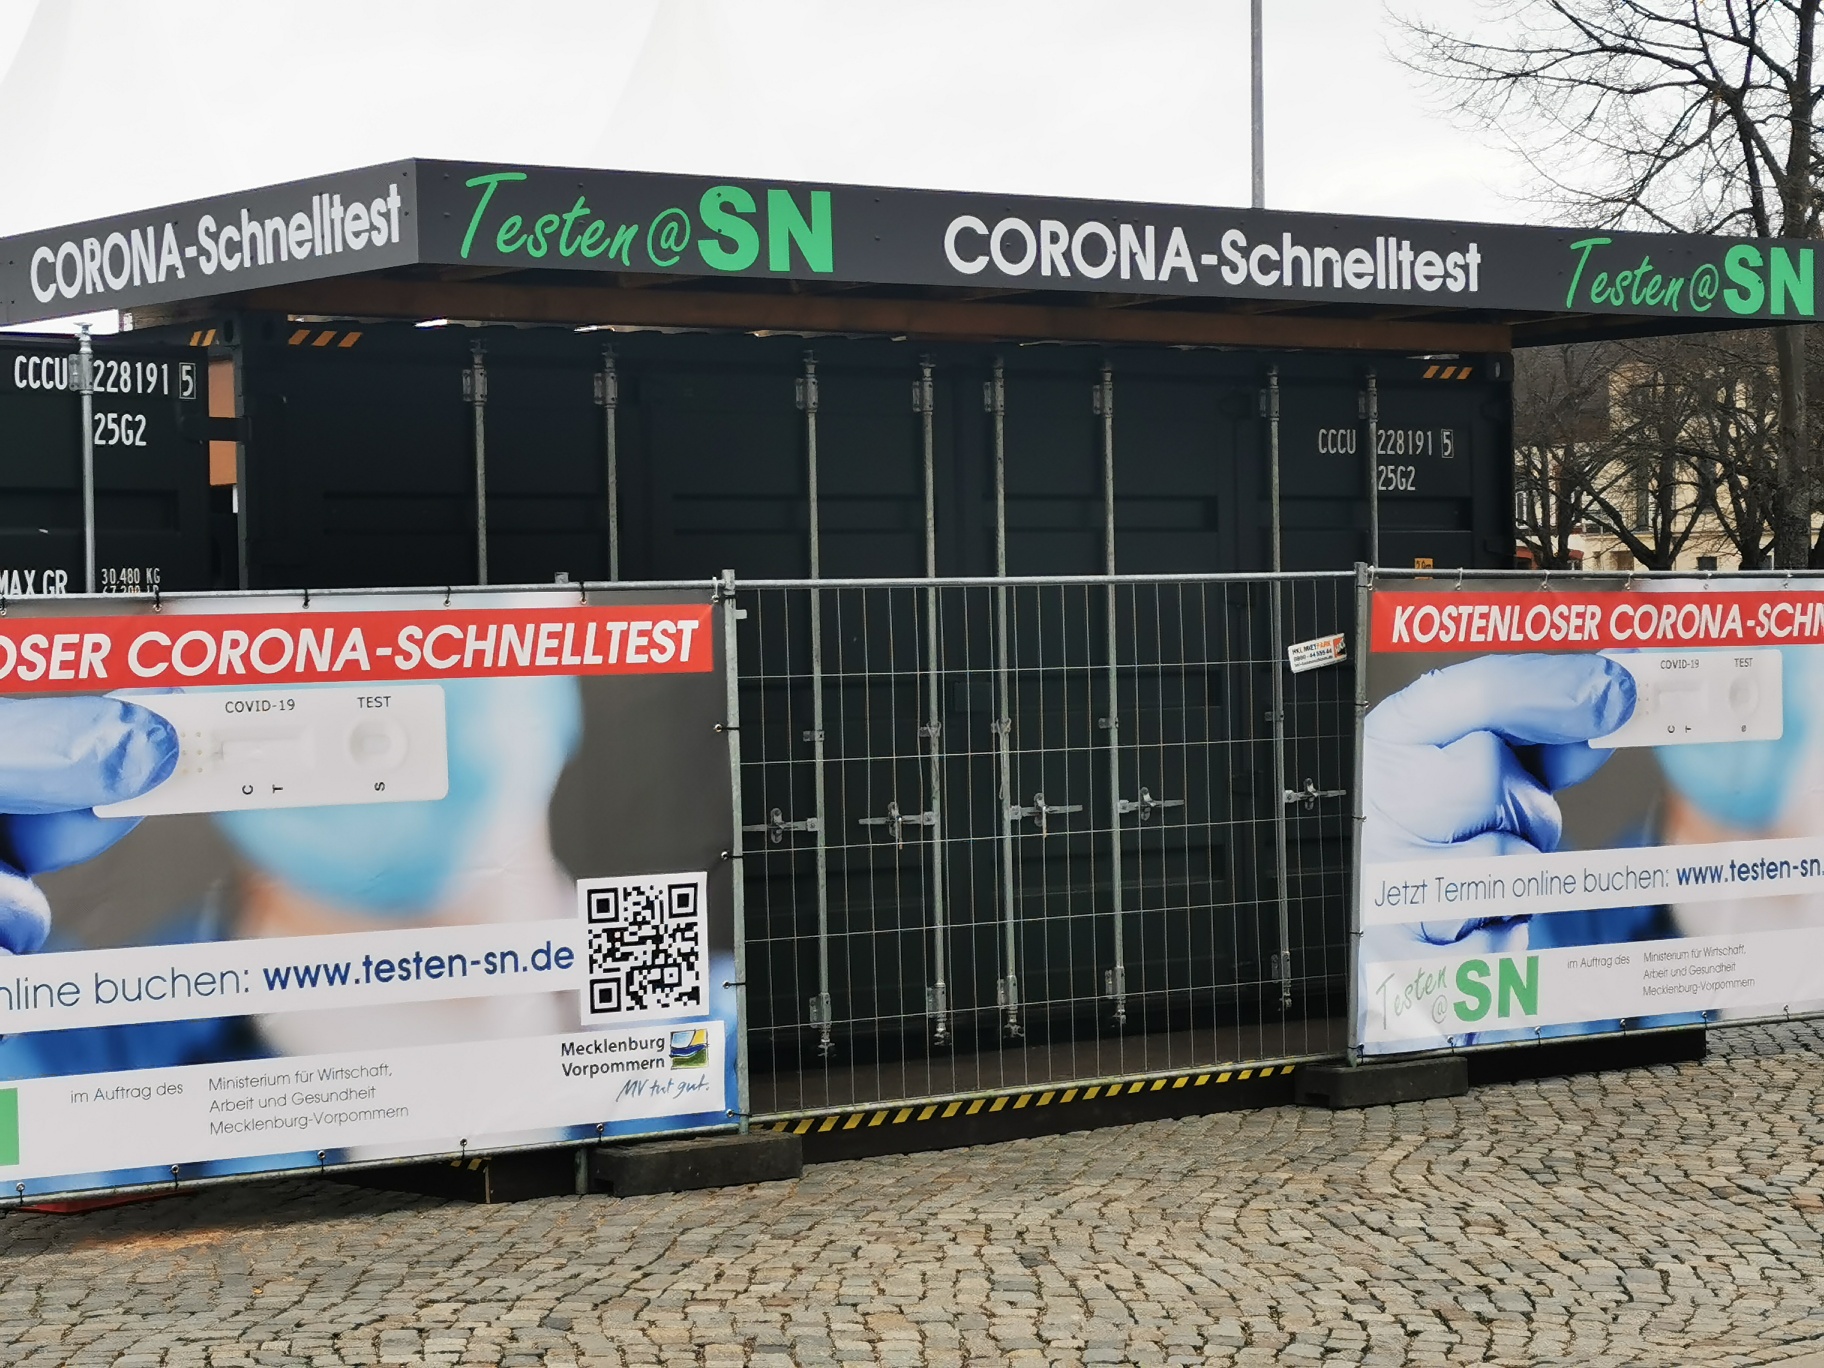 www.testen-sn.de: Zentrales Corona-Schnelltestzentrum ab morgen am Pfaffenteich